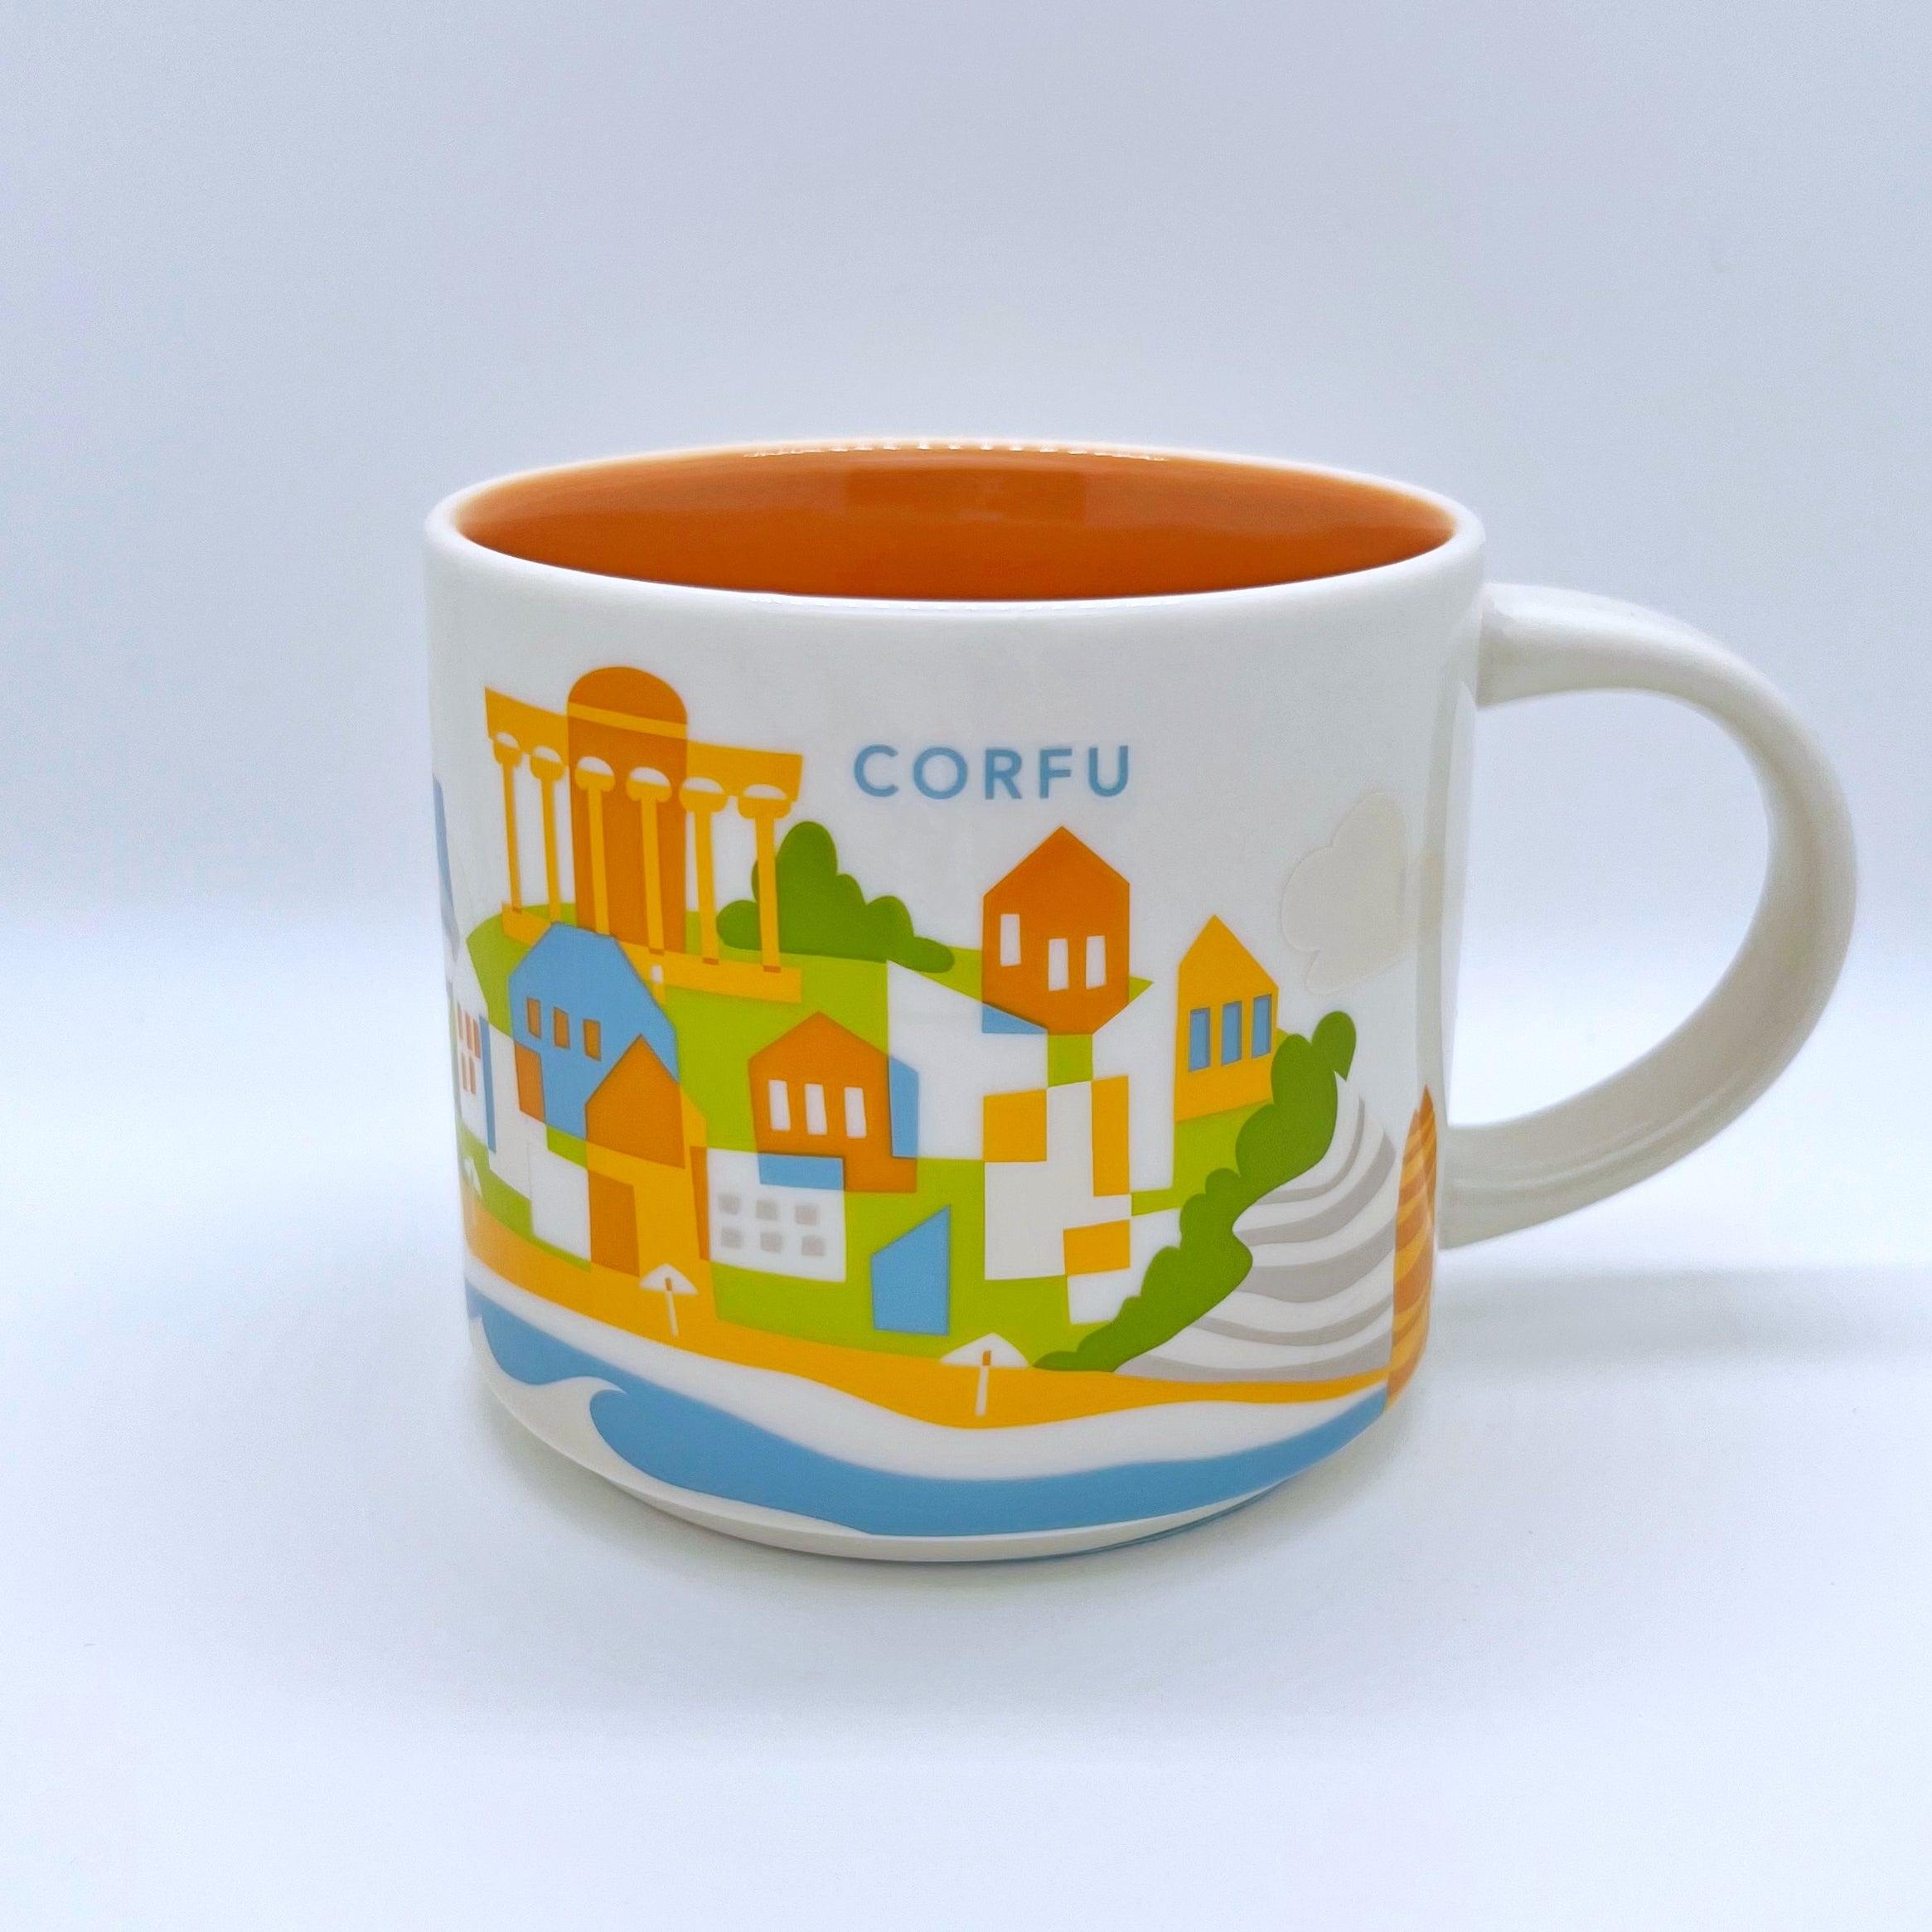 Kaffee Tee und Cappuccino Tasse von Starbucks mit gemalten Bildern aus der Stadt Korfu